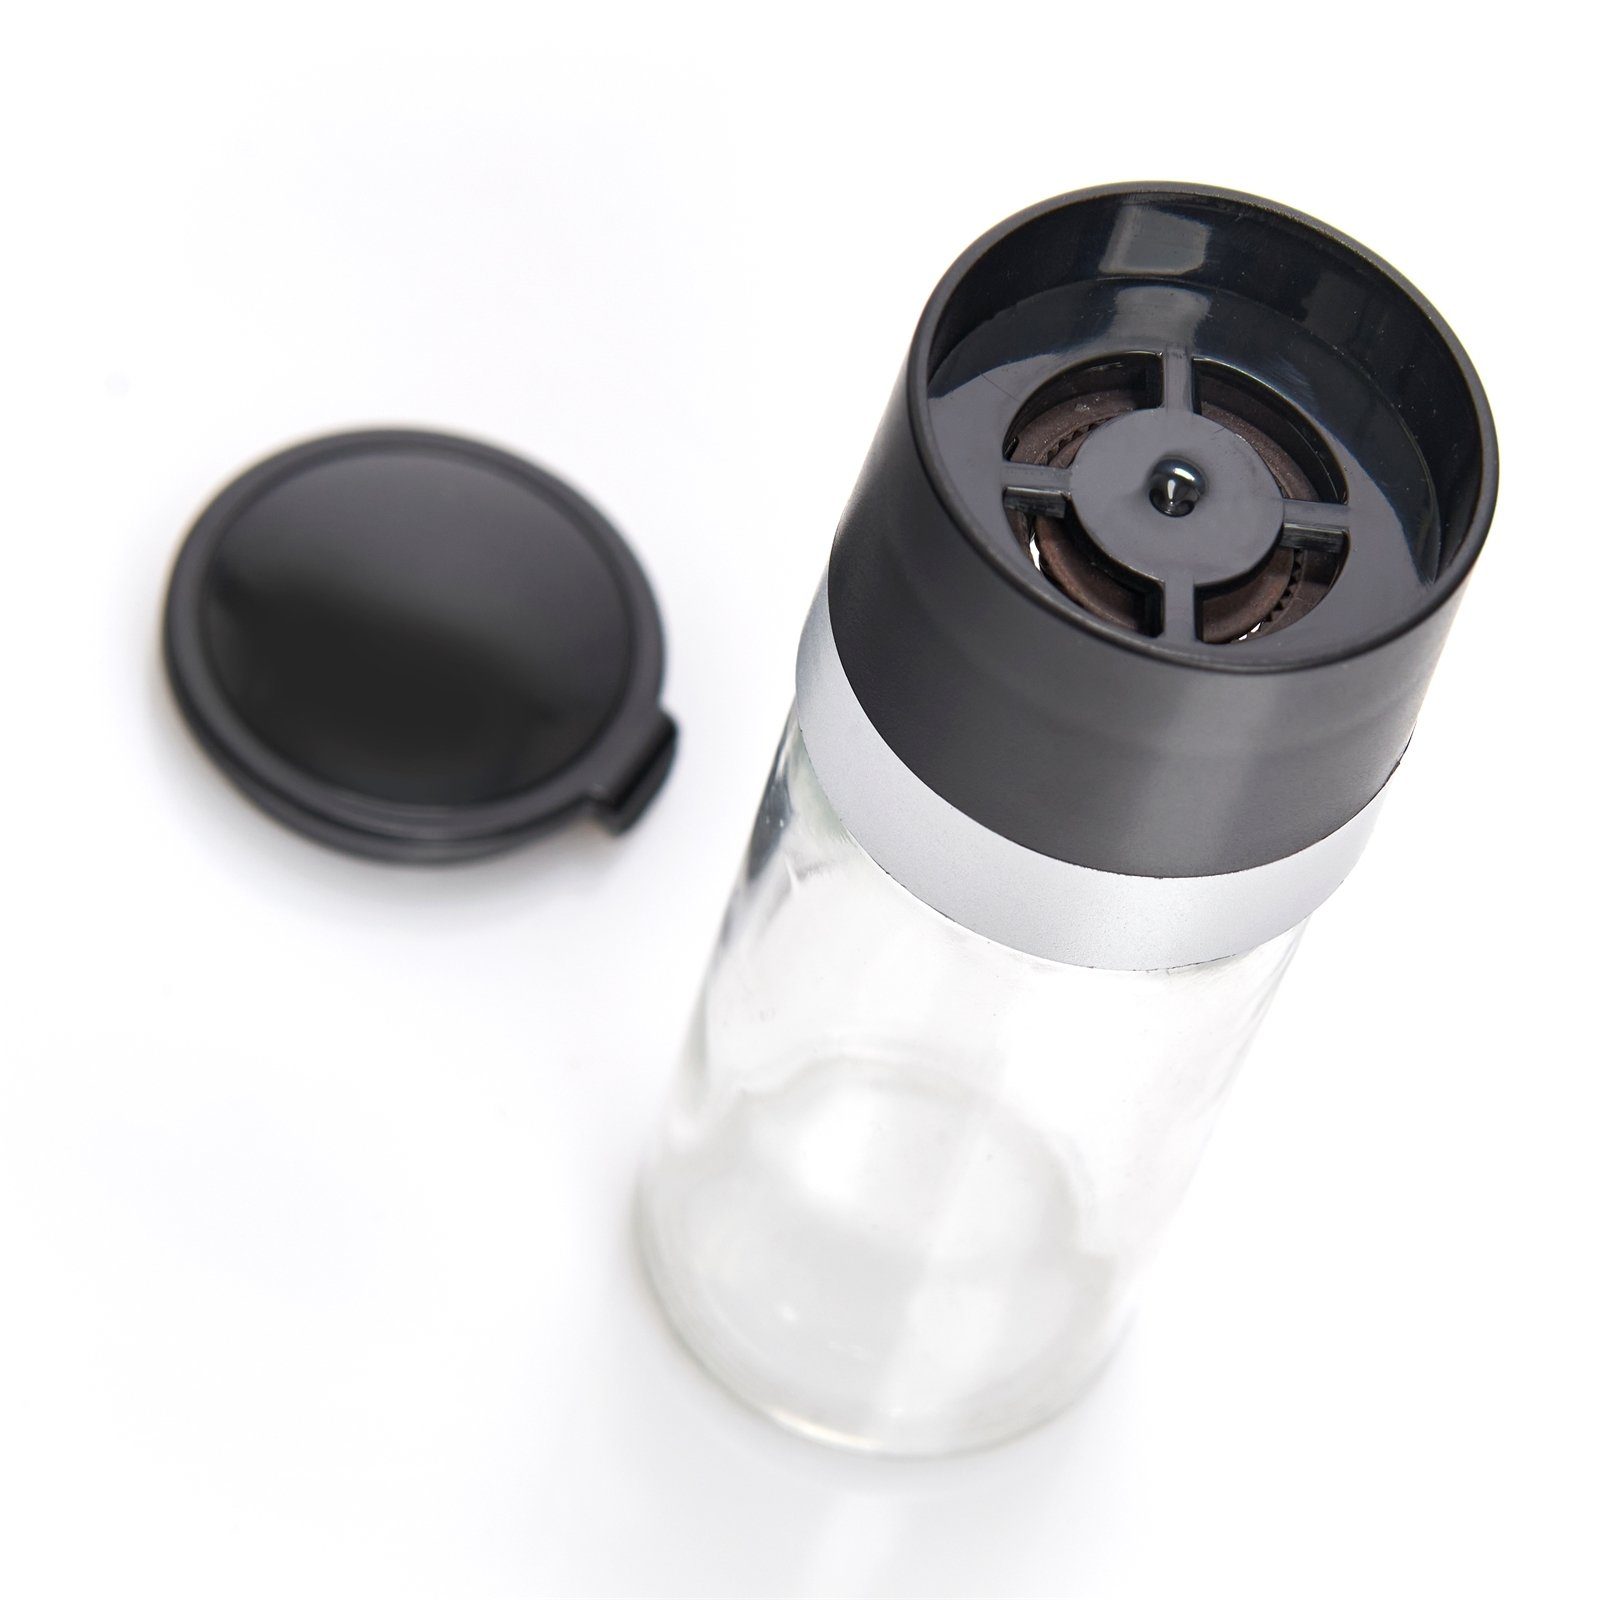 Zeller Present Gewürzmühle Salz- oder Stück), Pfeffermühle oder Glas, Salz- (1 Zeller Pfeffermühle Glas Present